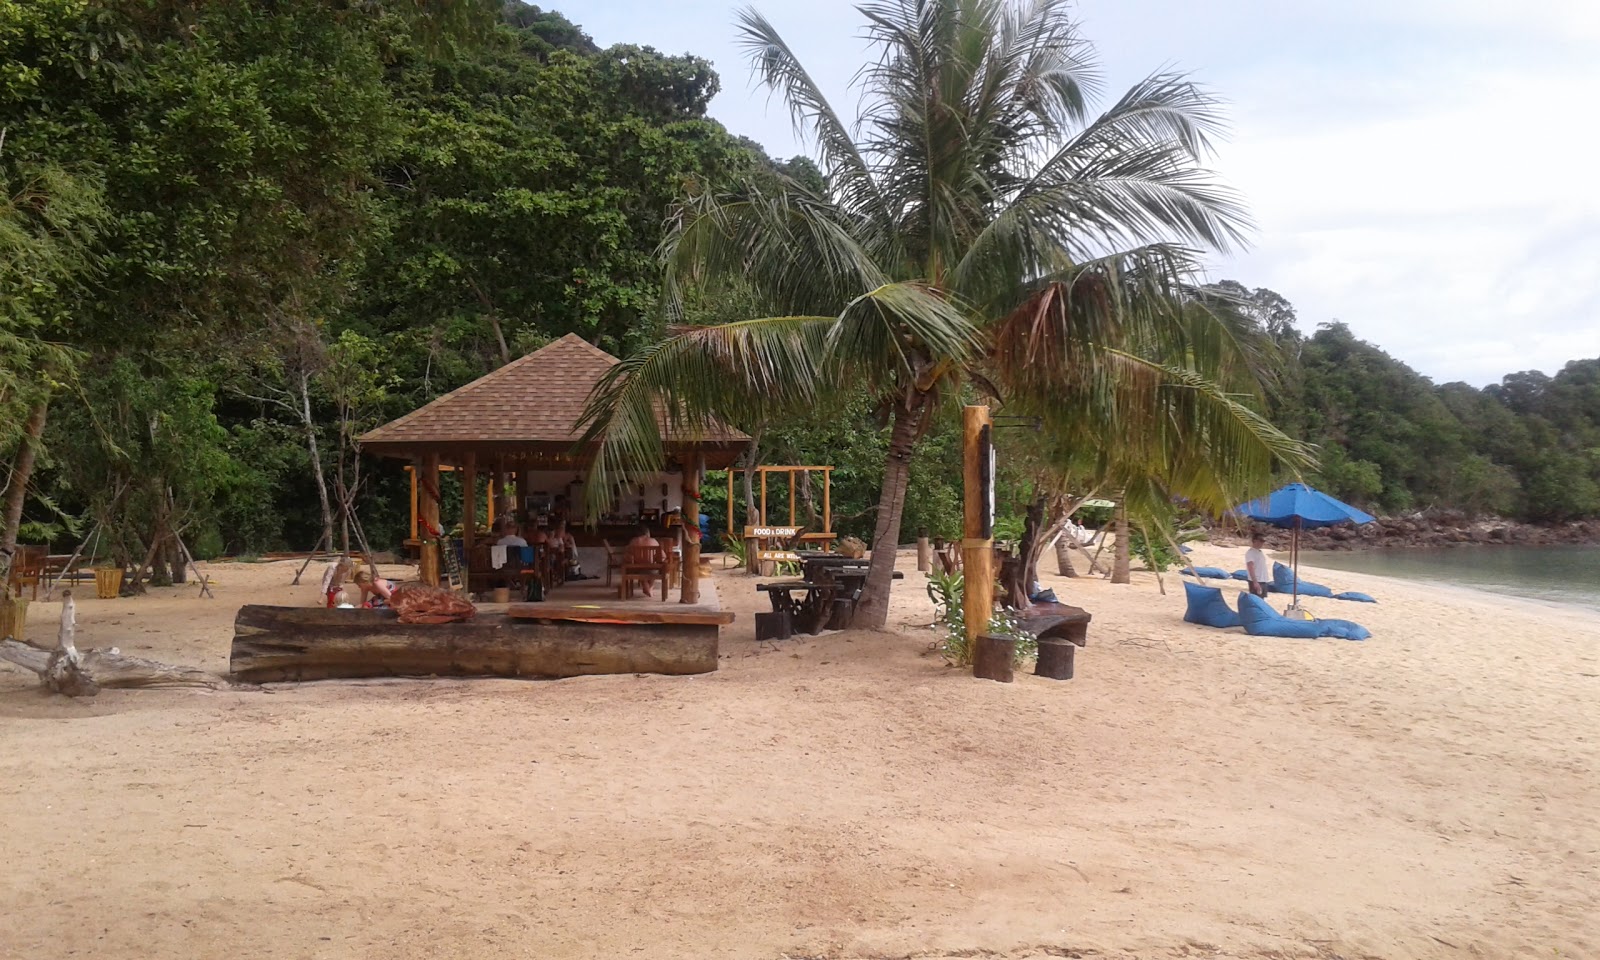 Foto de Koh Ngai Paradise Beach - lugar popular entre los conocedores del relax